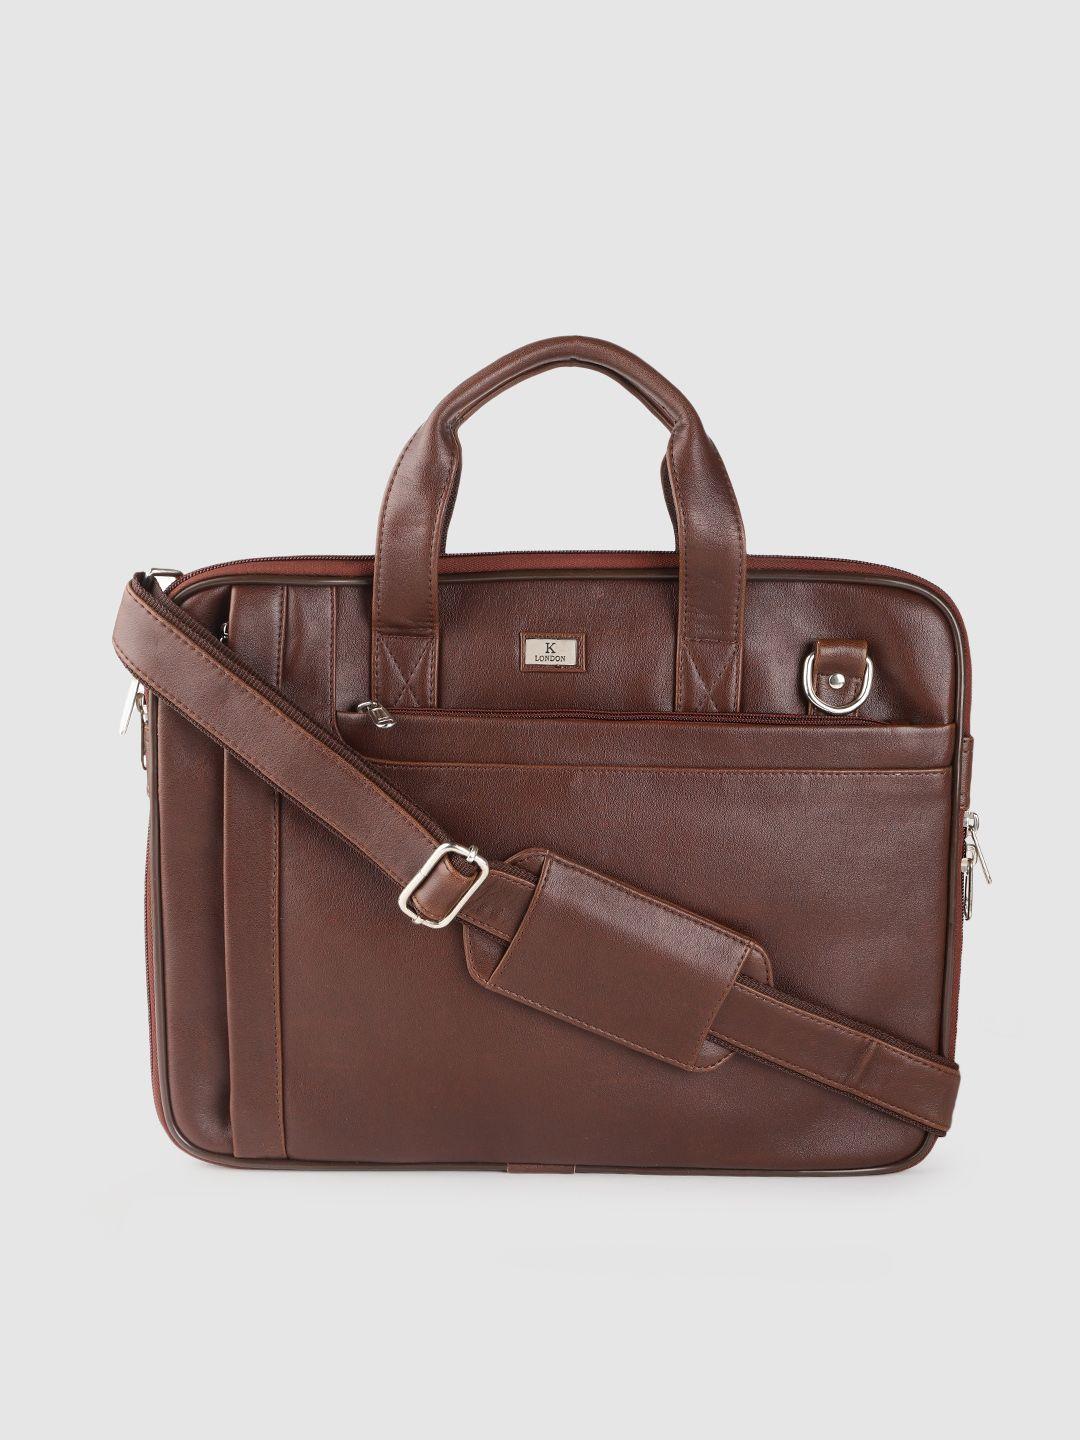 k-london-unisex-brown-laptop-bag